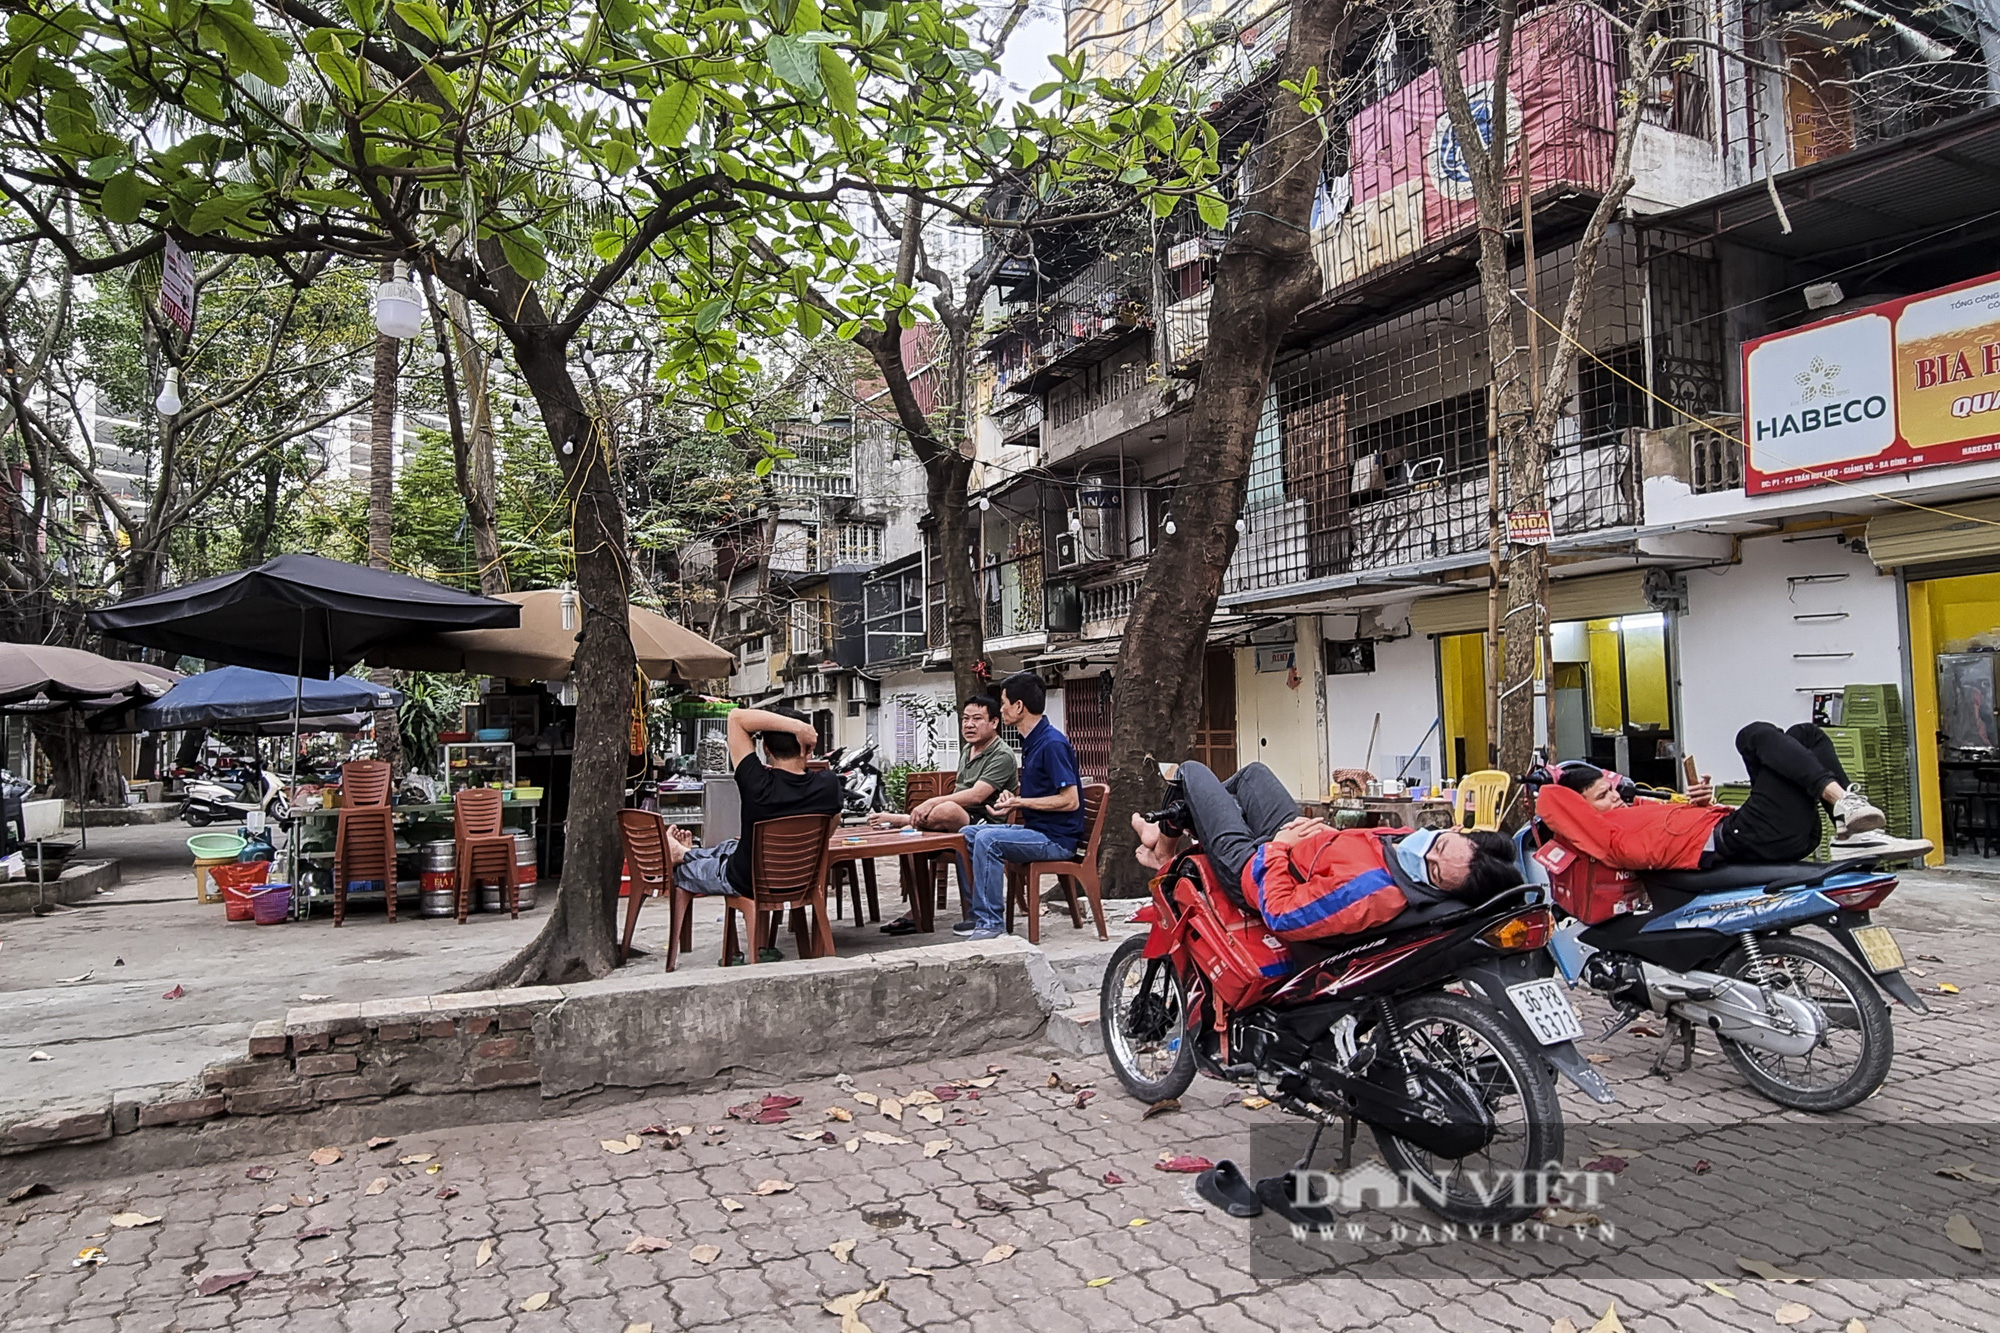 Hàng loạt không gian công cộng tại Hà Nội bị lấn chiếm để kinh doanh - Ảnh 8.